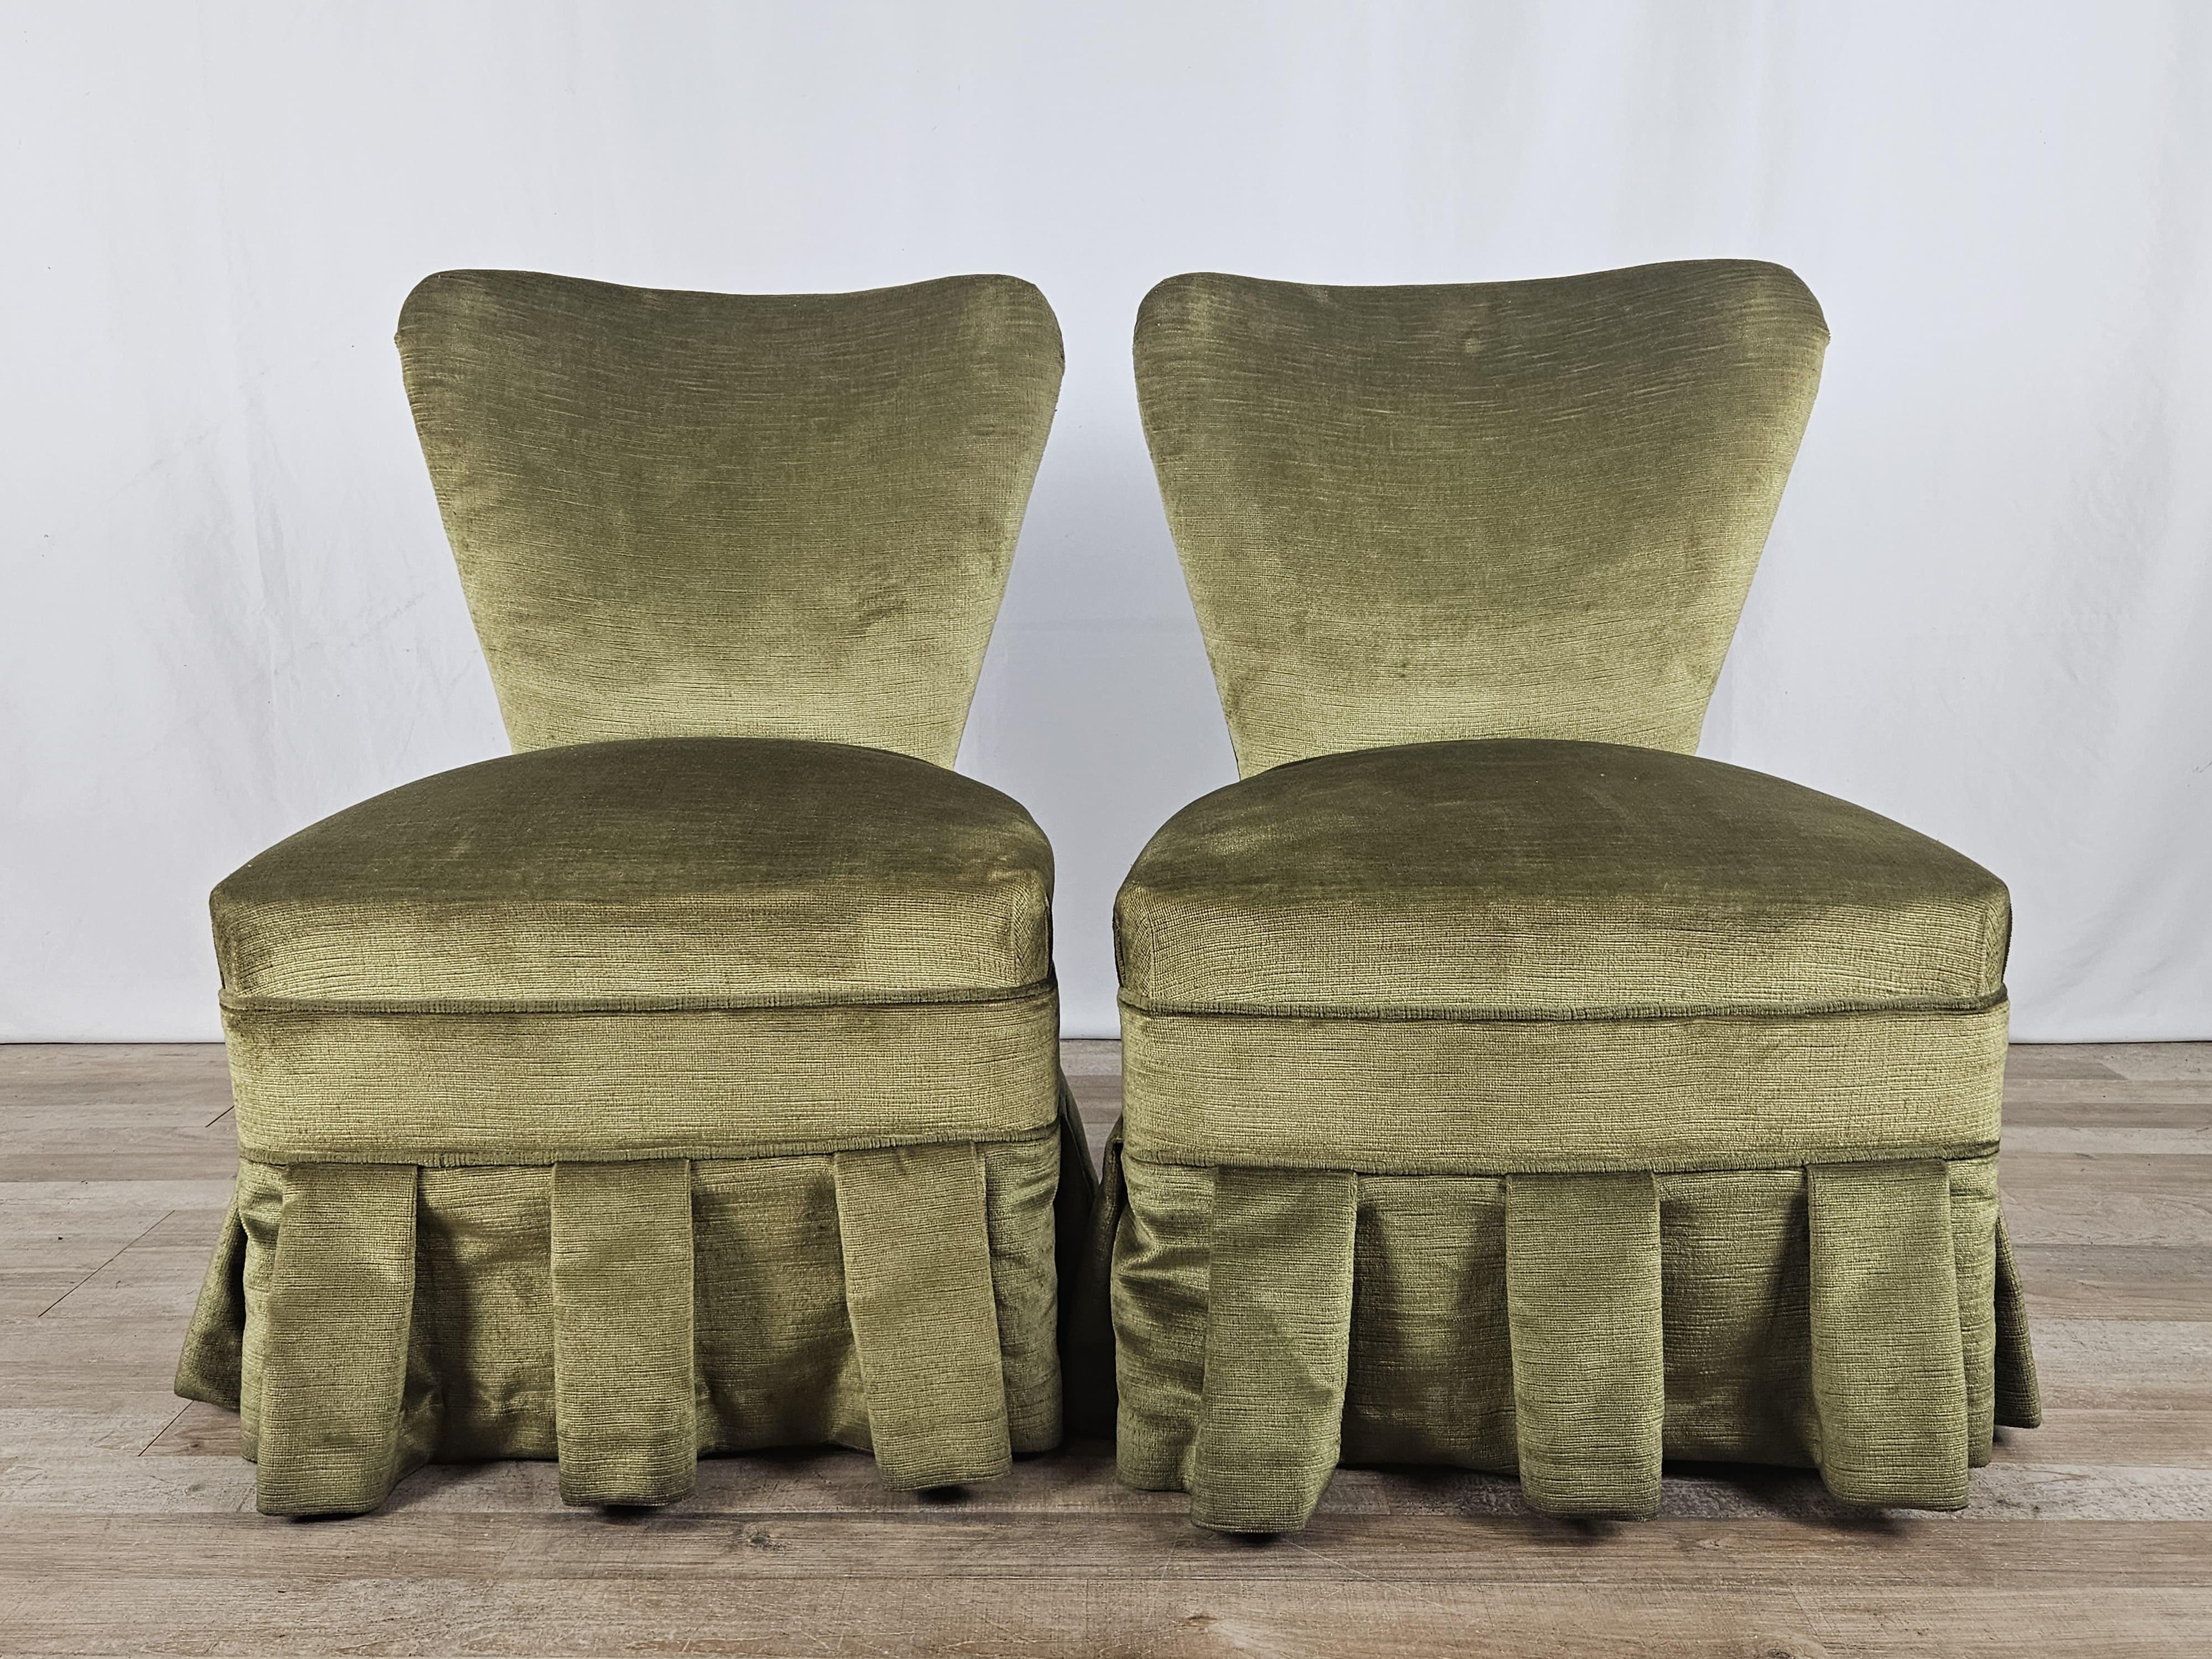 Coppia di poltroncine da camera o soggiorno interamente rivestite in stoffa verde con un bellissimo effetto mosso intorno la seduta.

Si prestano molto bene in ambienti caldi e colorati, adattabili a qualsiasi genere di arredamento moderno o